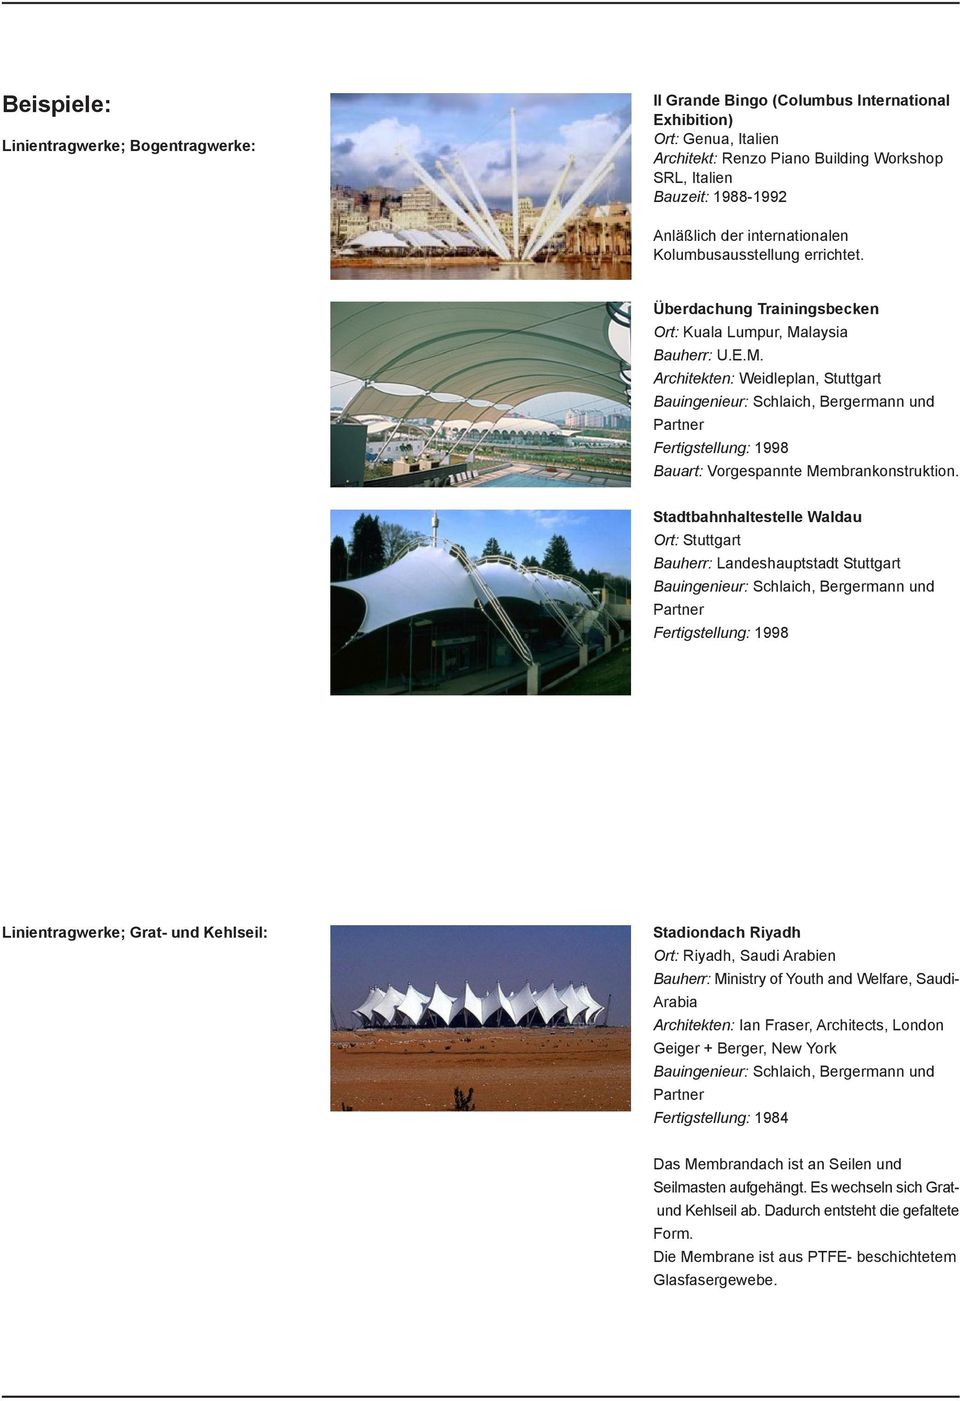 laysia Bauherr: U.E.M. Architekten: Weidleplan, Stuttgart Bauingenieur: Schlaich, Bergermann und Partner Fertigstellung: 1998 Bauart: Vorgespannte Membrankonstruktion.